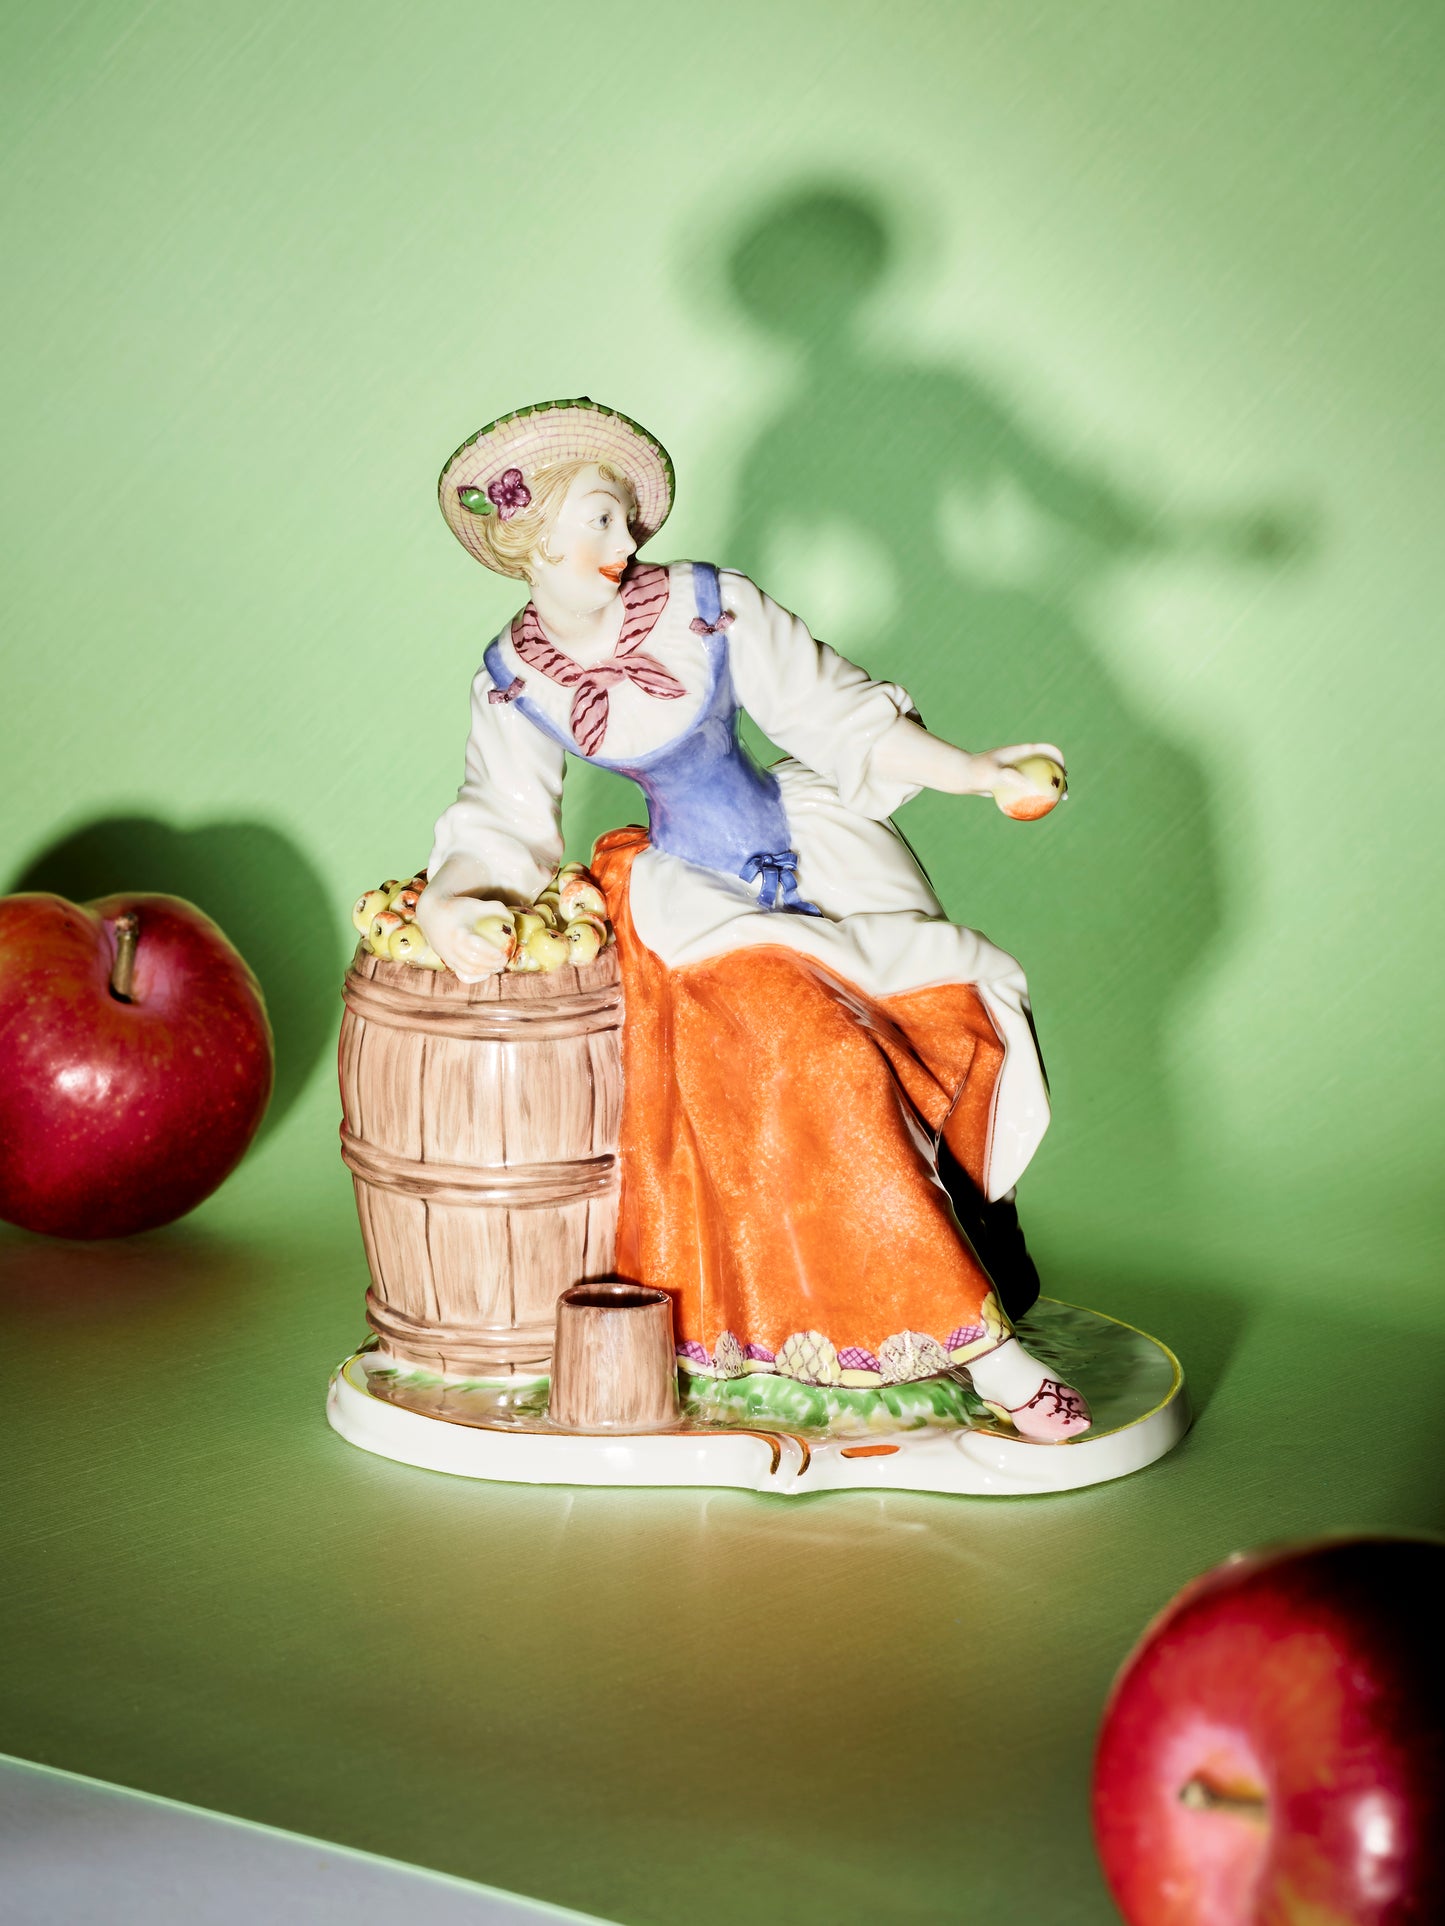 Apfelverkäuferin | 311 | 15 cm | handbemalt